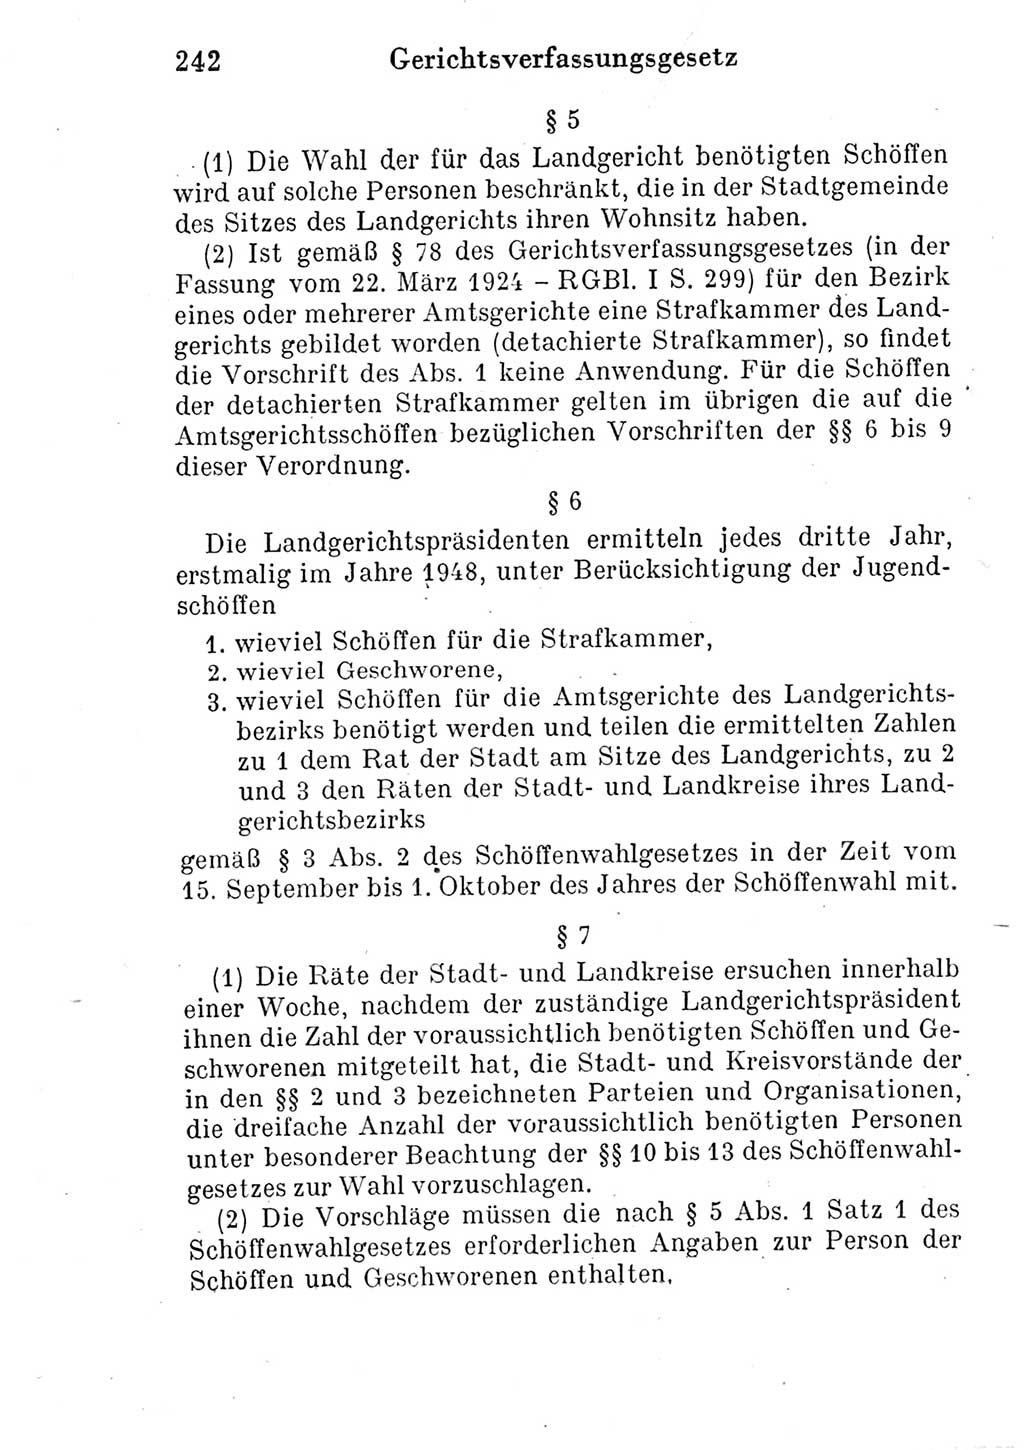 Strafprozeßordnung (StPO), Gerichtsverfassungsgesetz (GVG) und zahlreiche Nebengesetze der Deutschen Demokratischen Republik (DDR) 1950, Seite 242 (StPO GVG Ges. DDR 1950, S. 242)